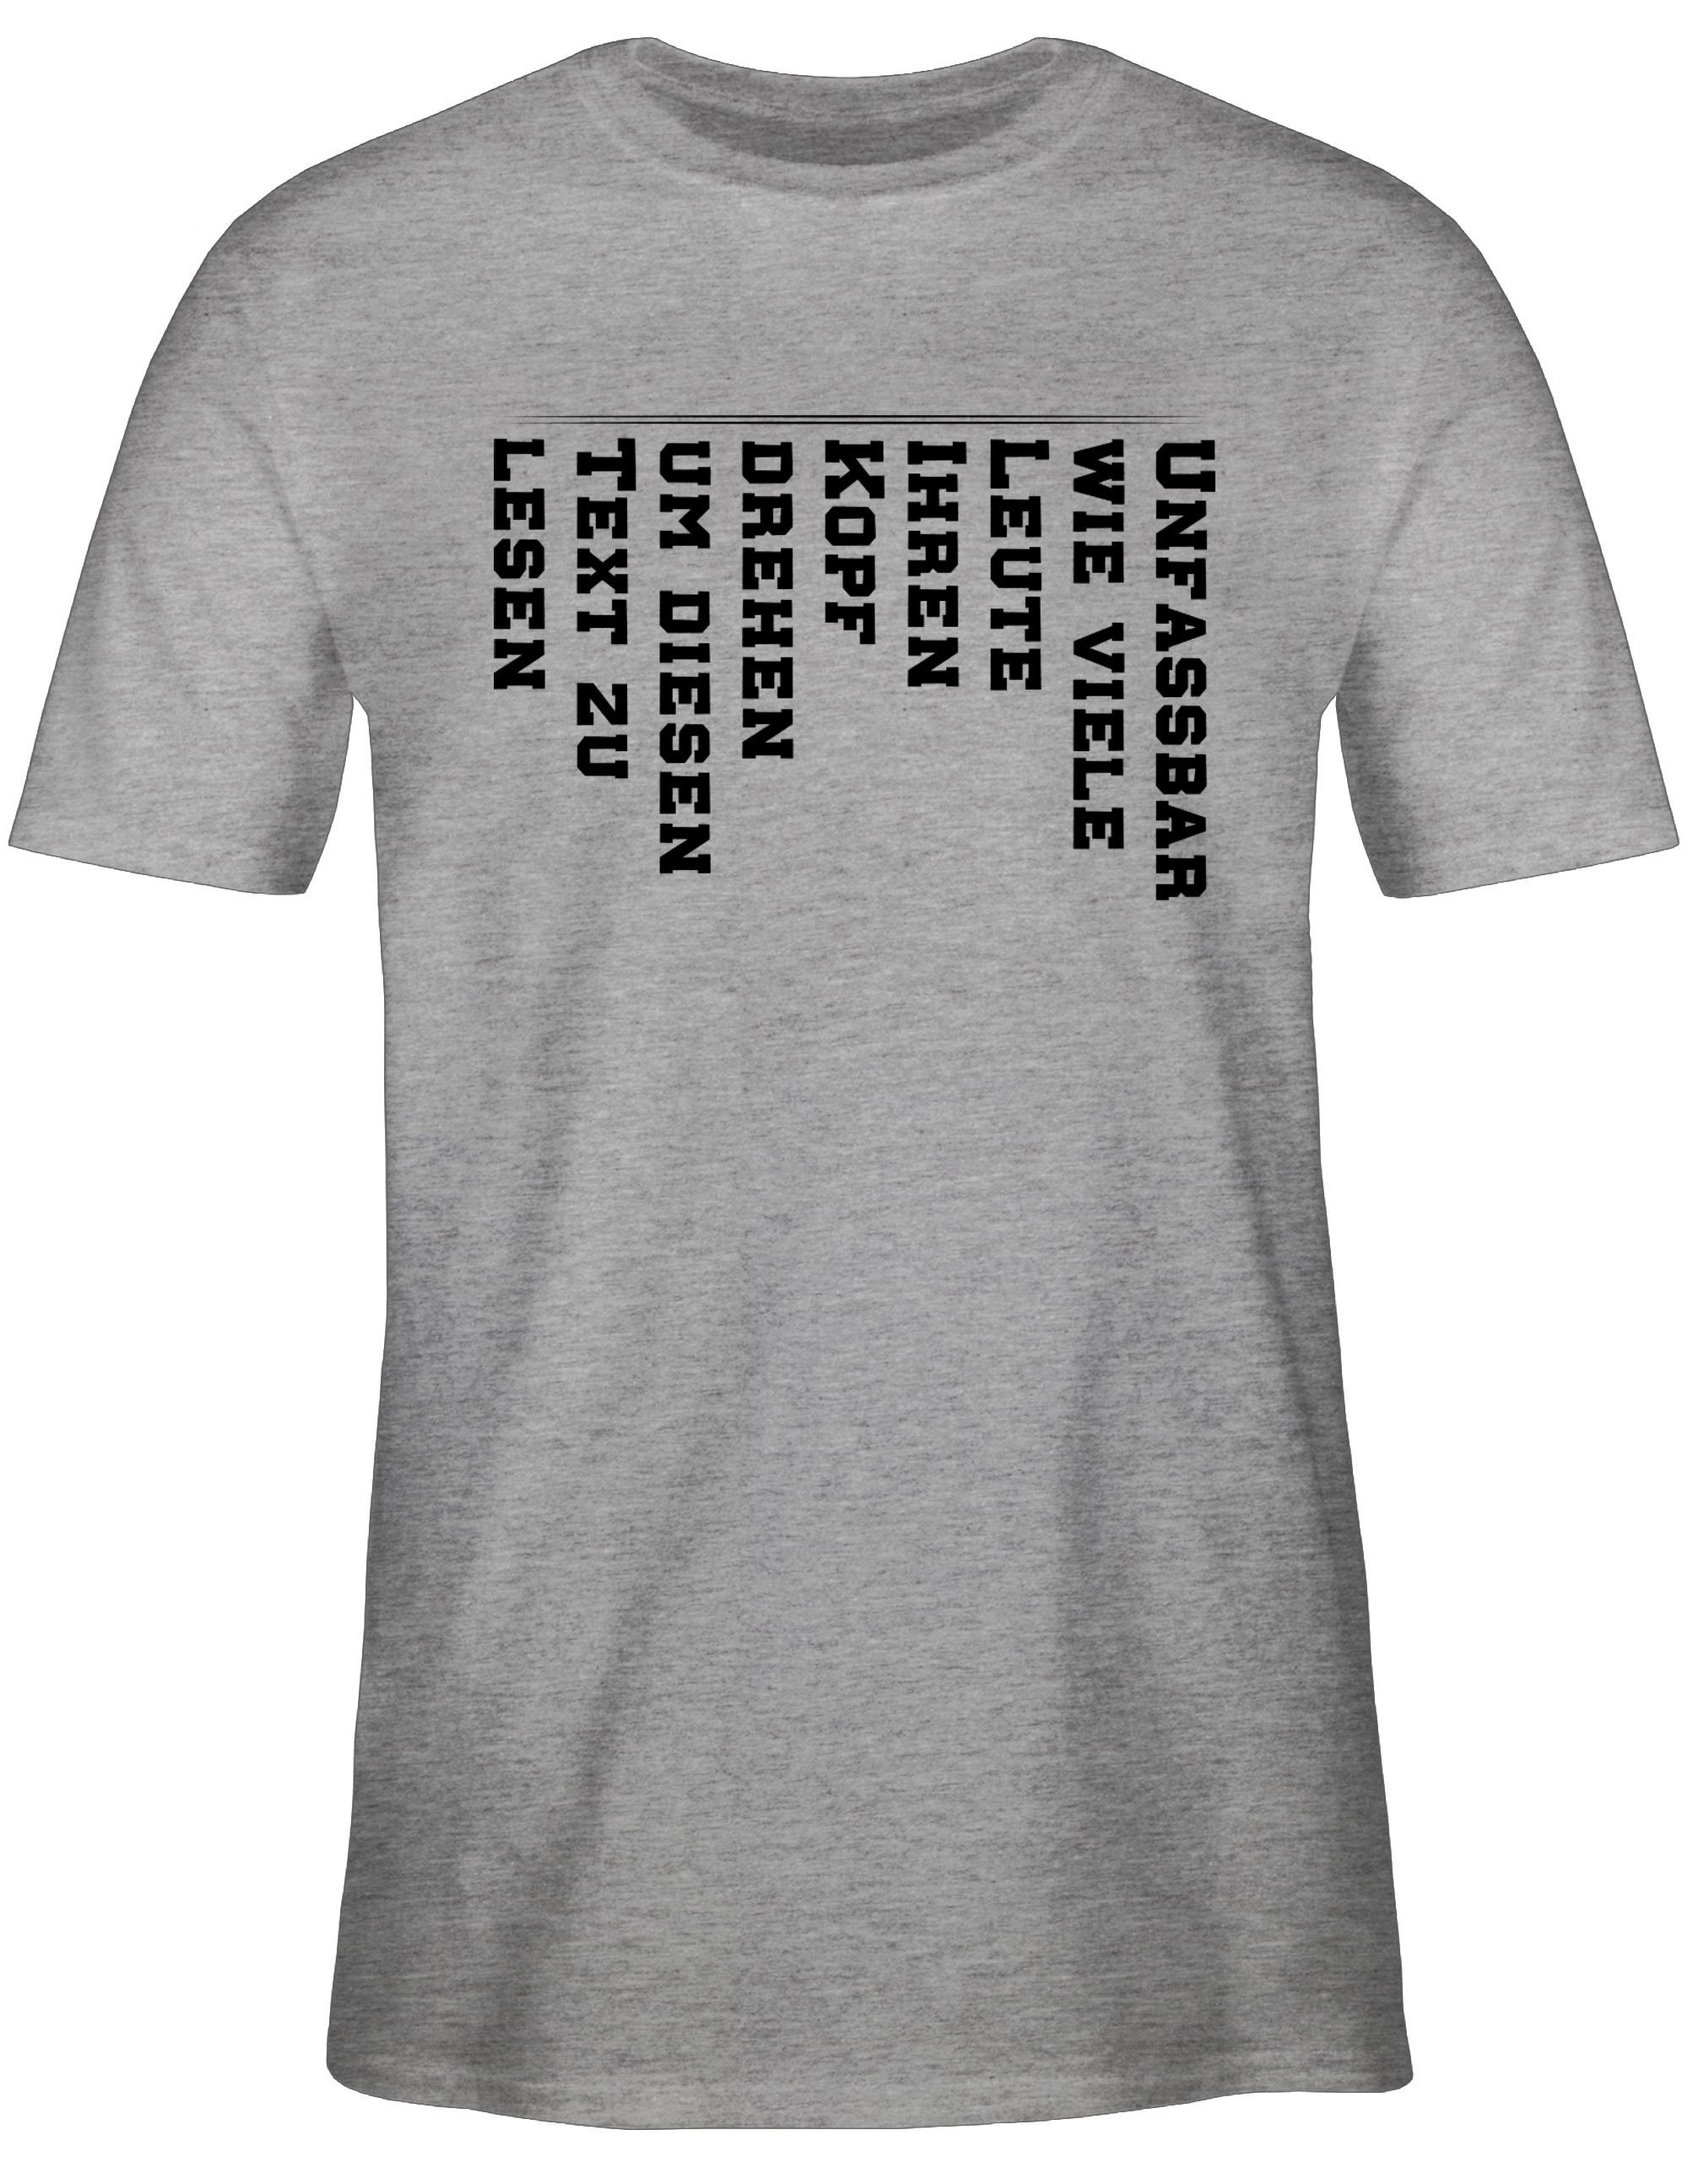 Shirtracer T-Shirt Unfassbar wie Leute lesen Statement Text Spruch drehen 1 Kopf zu Grau mit Sprüche viele meliert den diesen um